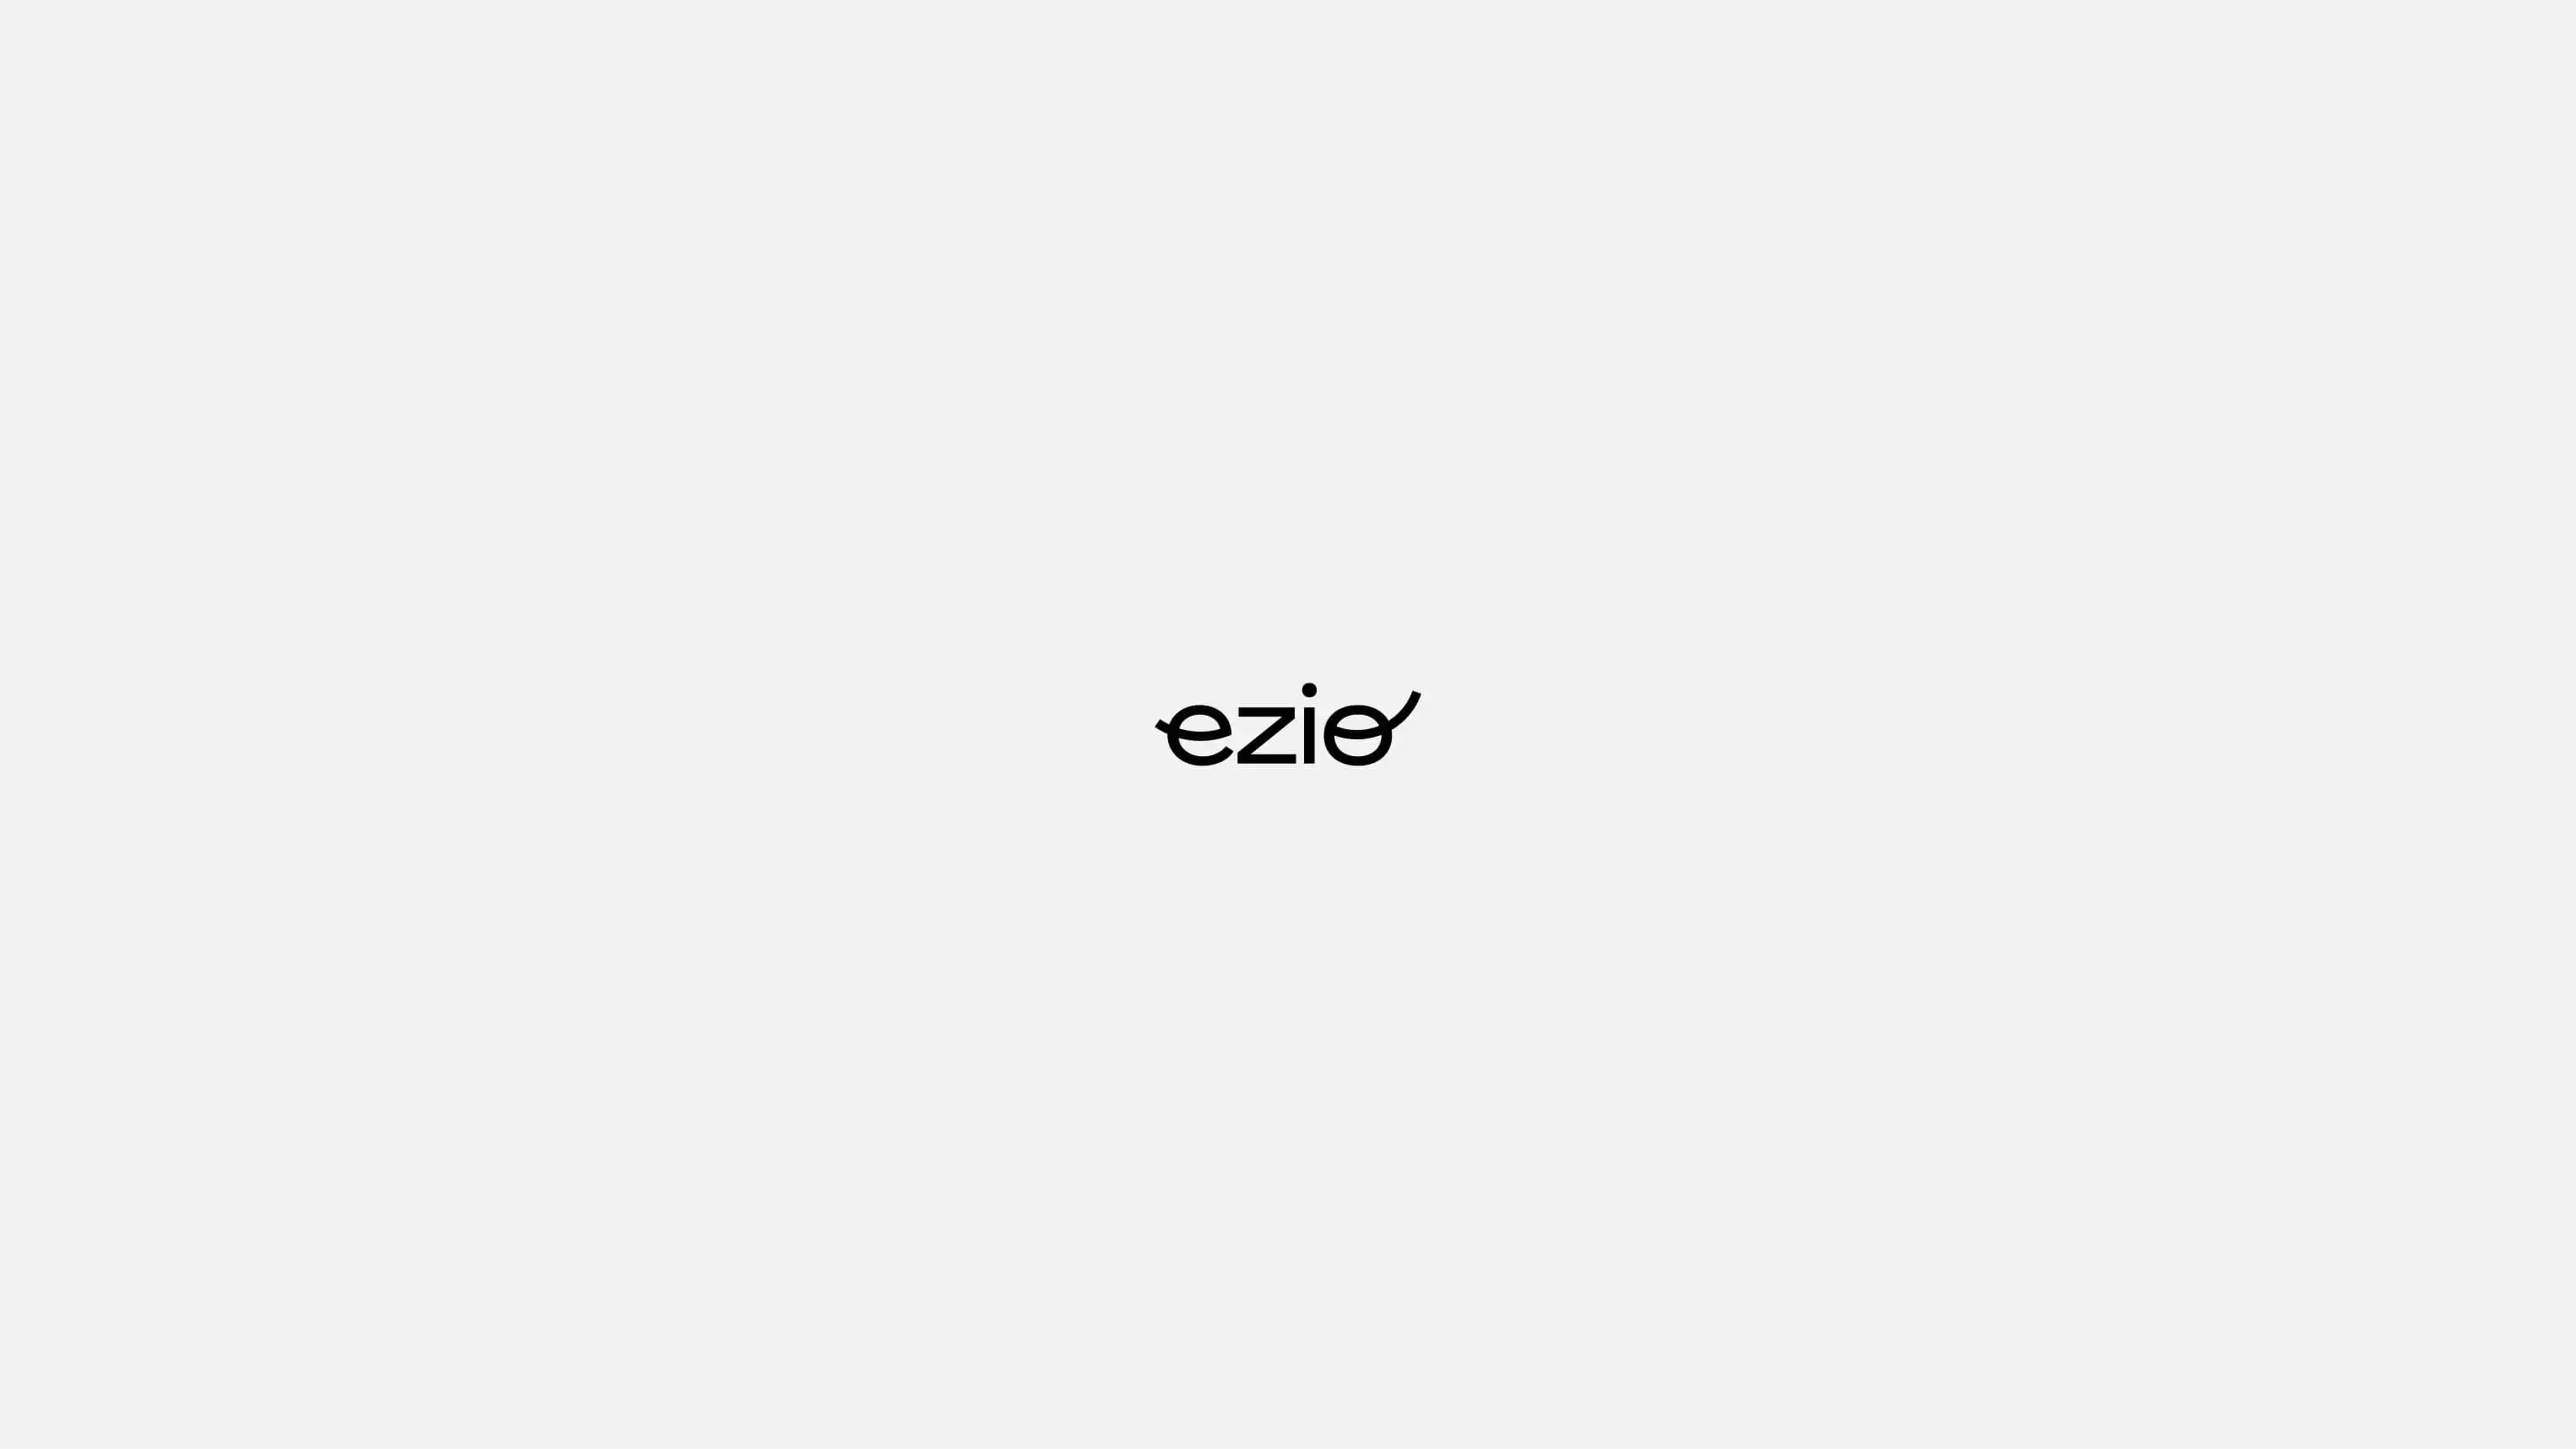 Ezio's logotype